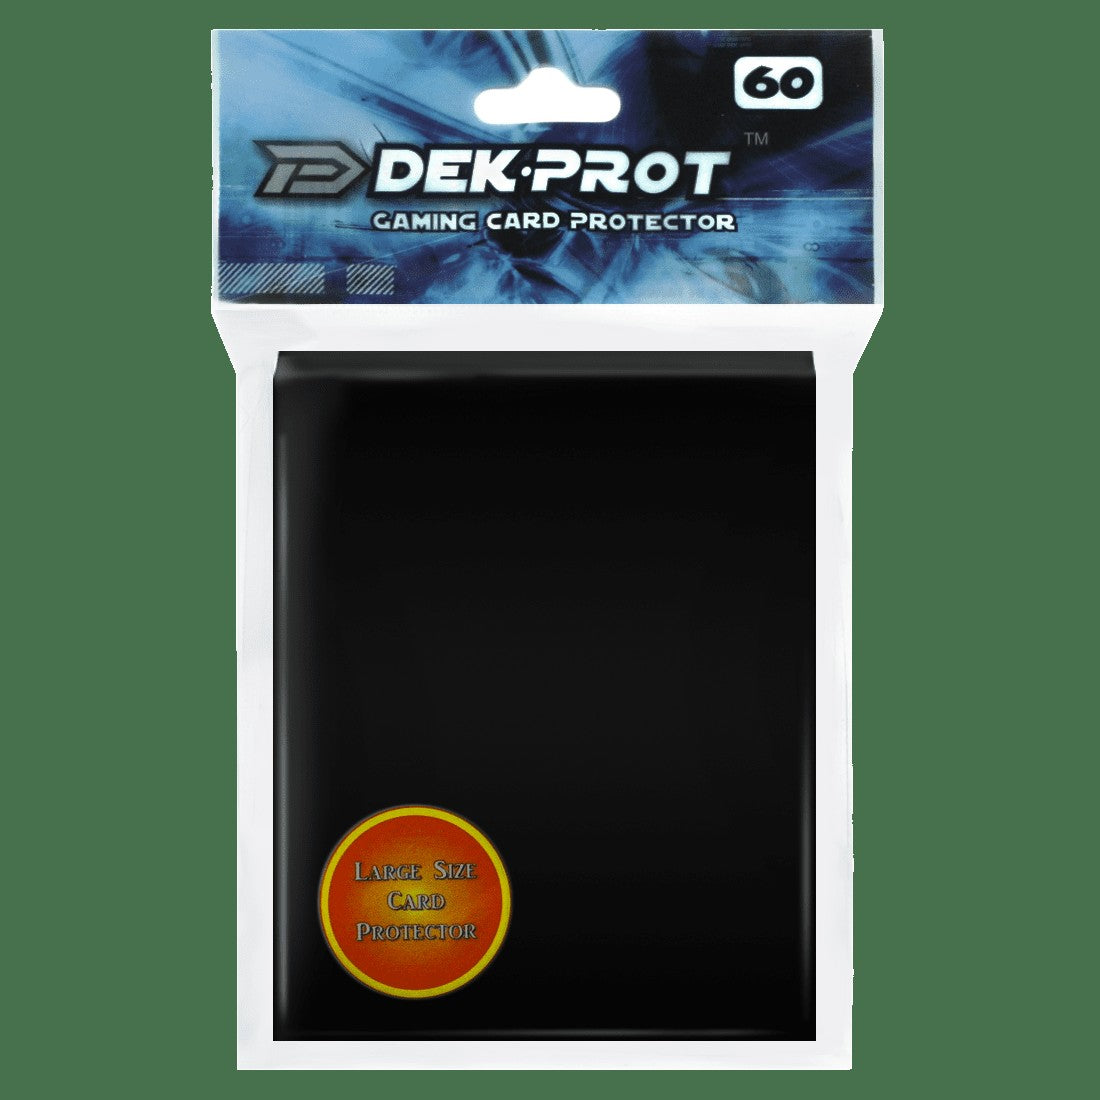 Dek Prot Standard Sized Card Sleeves - Midnight Black (60 Card Sleeves)